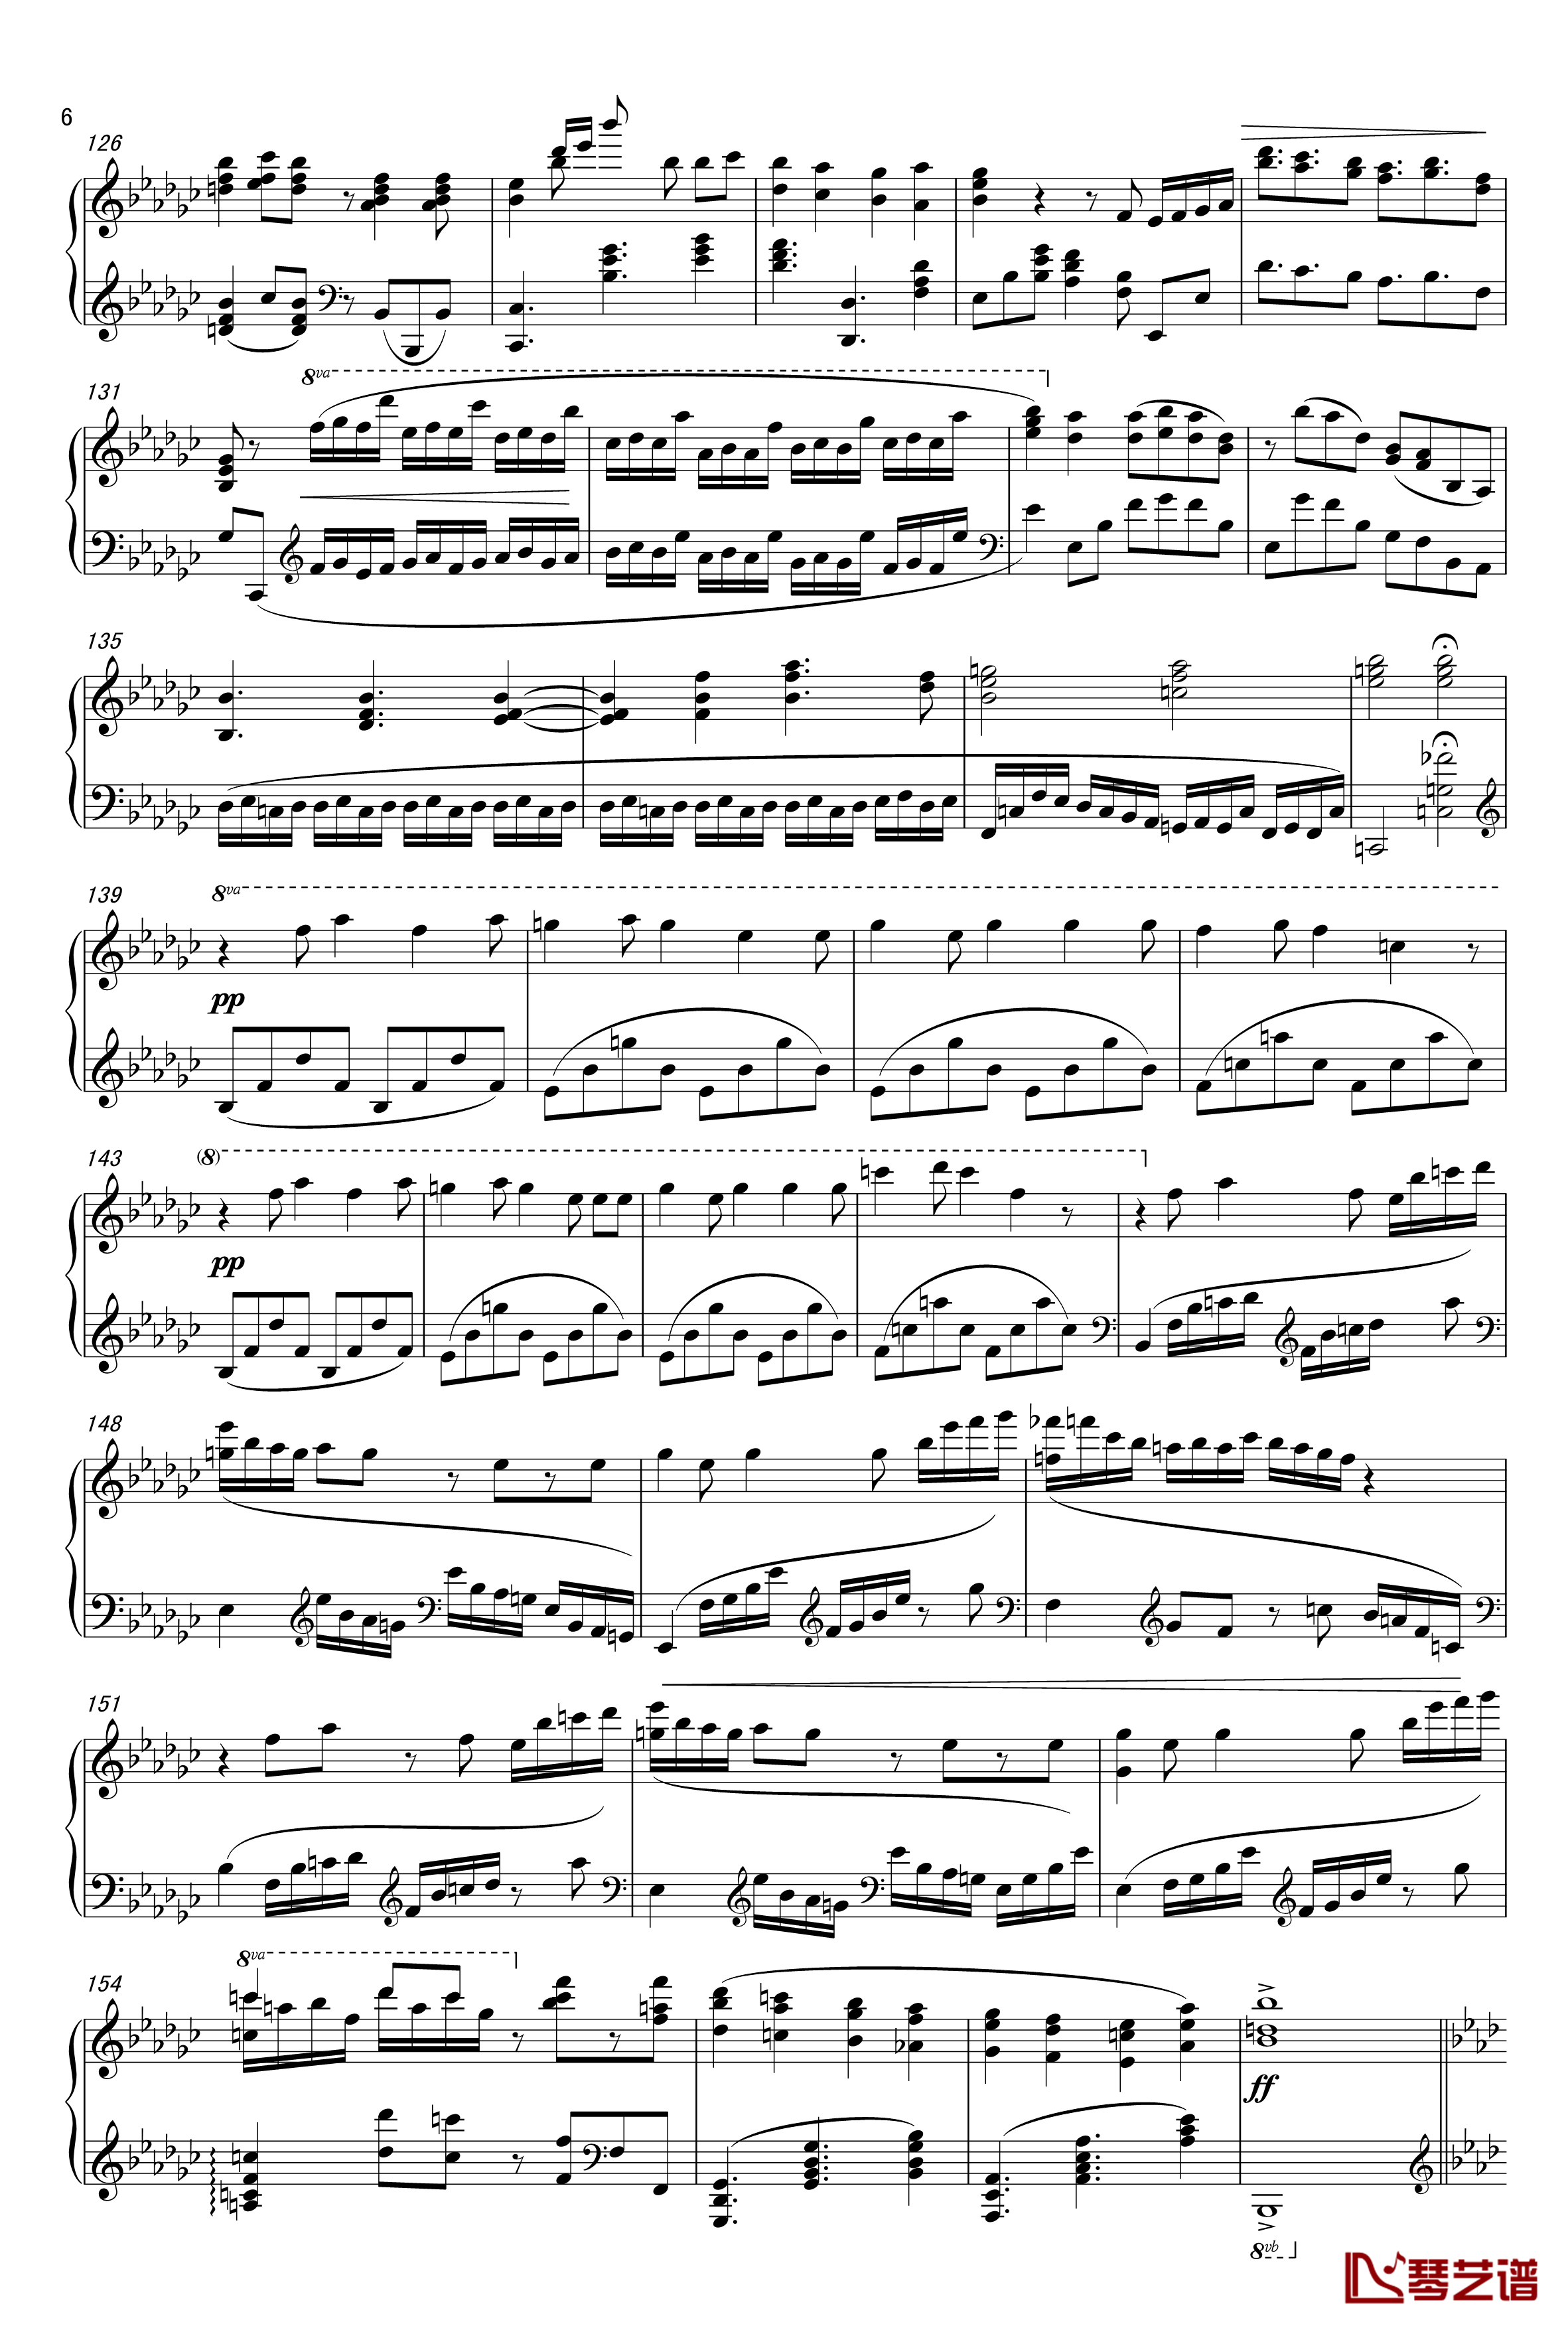 ロミオとシンデレラ钢琴谱-初音未来6